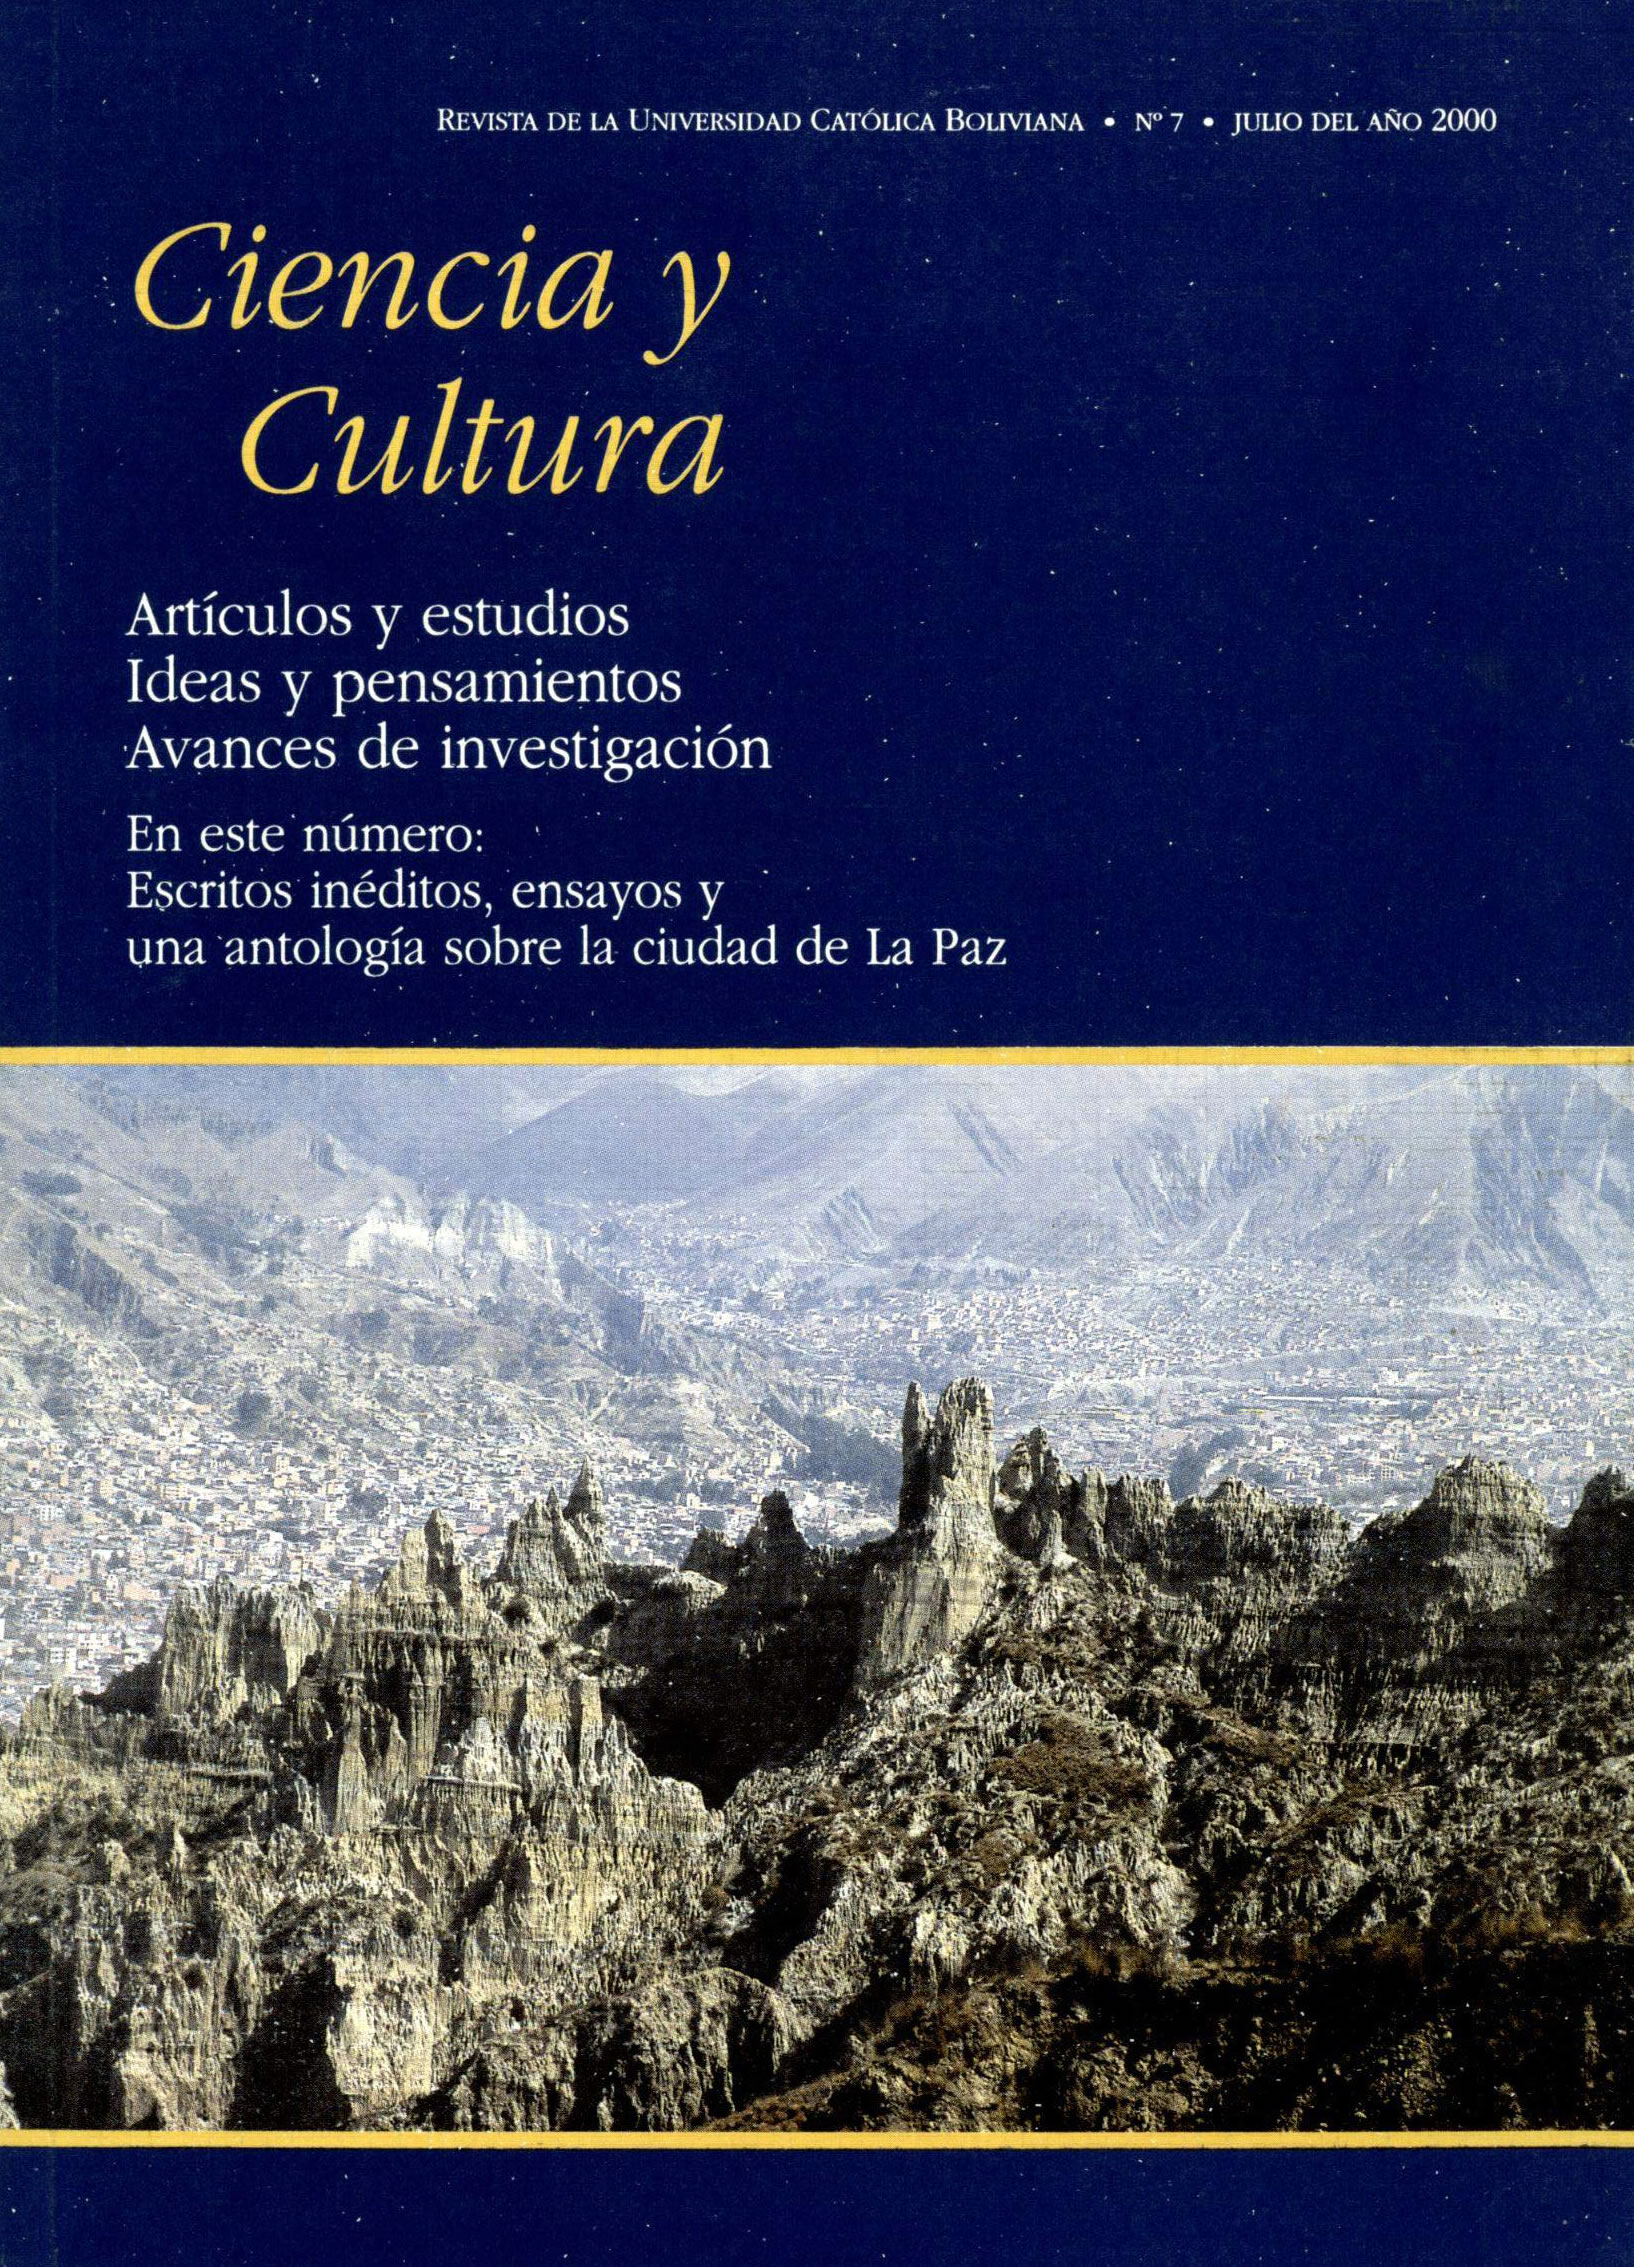 Escritos inéditos, ensayos y una antología sobre la ciudad de La Paz